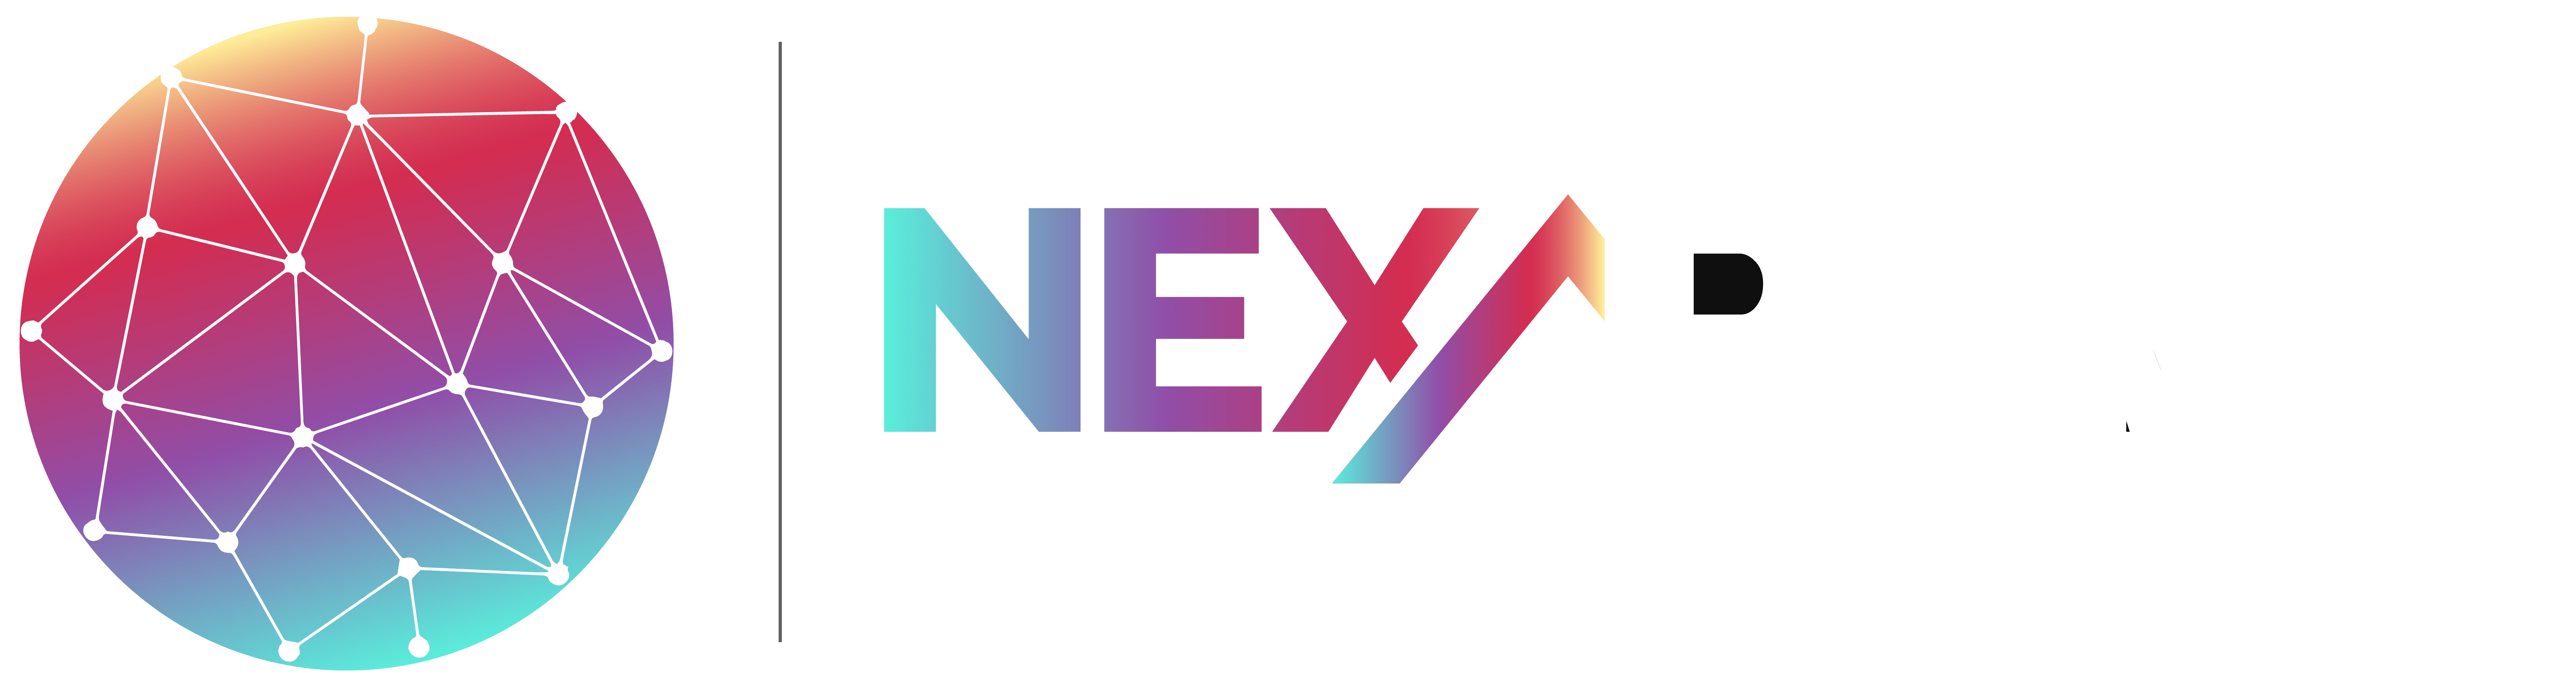 NexaSpy Reviews | Read Customer Service Reviews of nexaspy.com